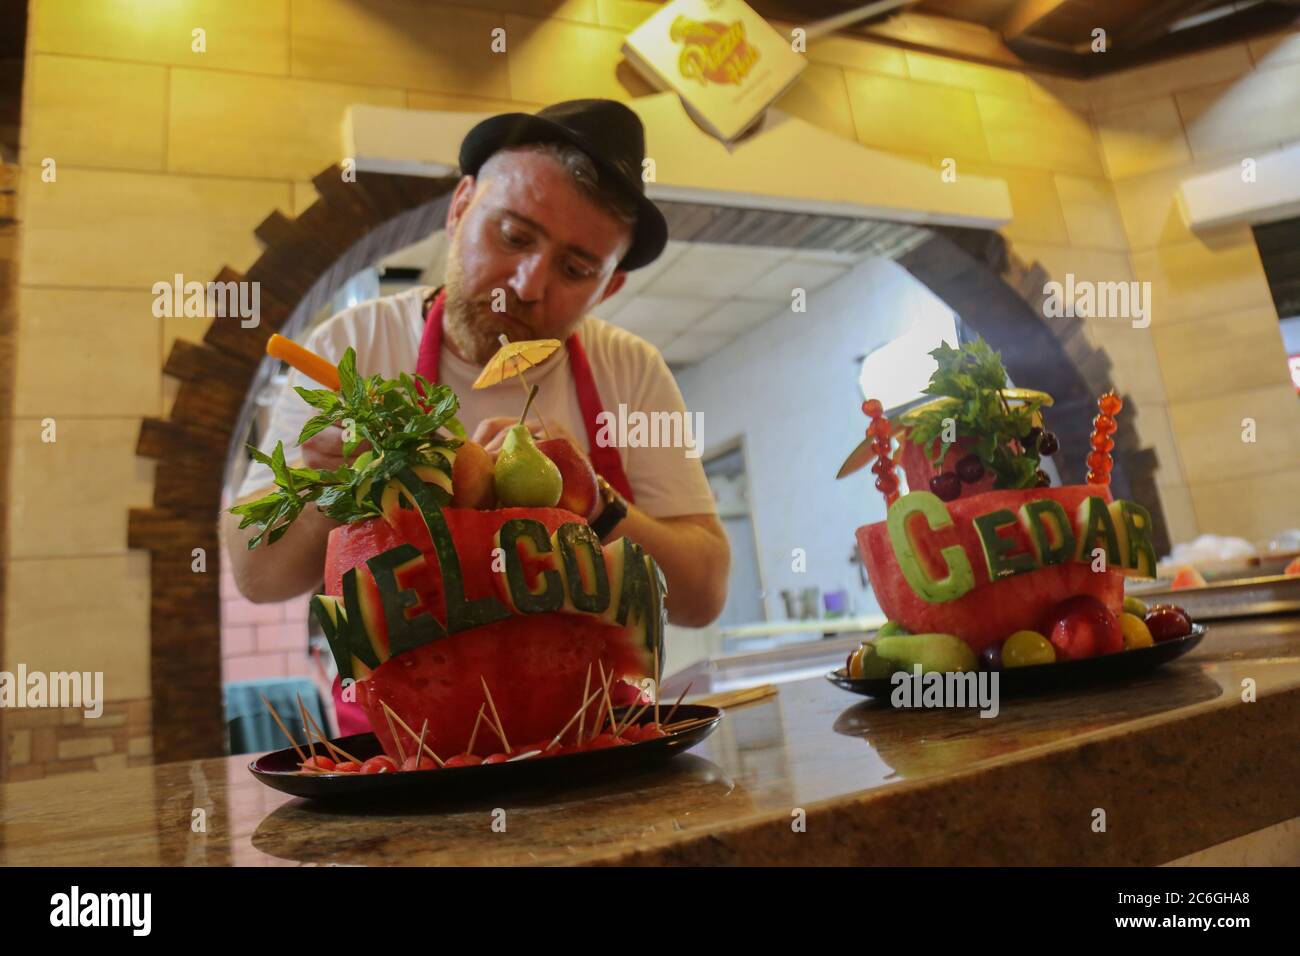 Gaza. 9 de julio de 2020. Chef Wareef Qassem, de 40 años, hace las palabras sobre sandías como una manera de atraer clientes en la ciudad de Gaza, el 9 de julio de 2020. Crédito: Rizek Abdeljawad/Xinhua/Alamy Live News Foto de stock